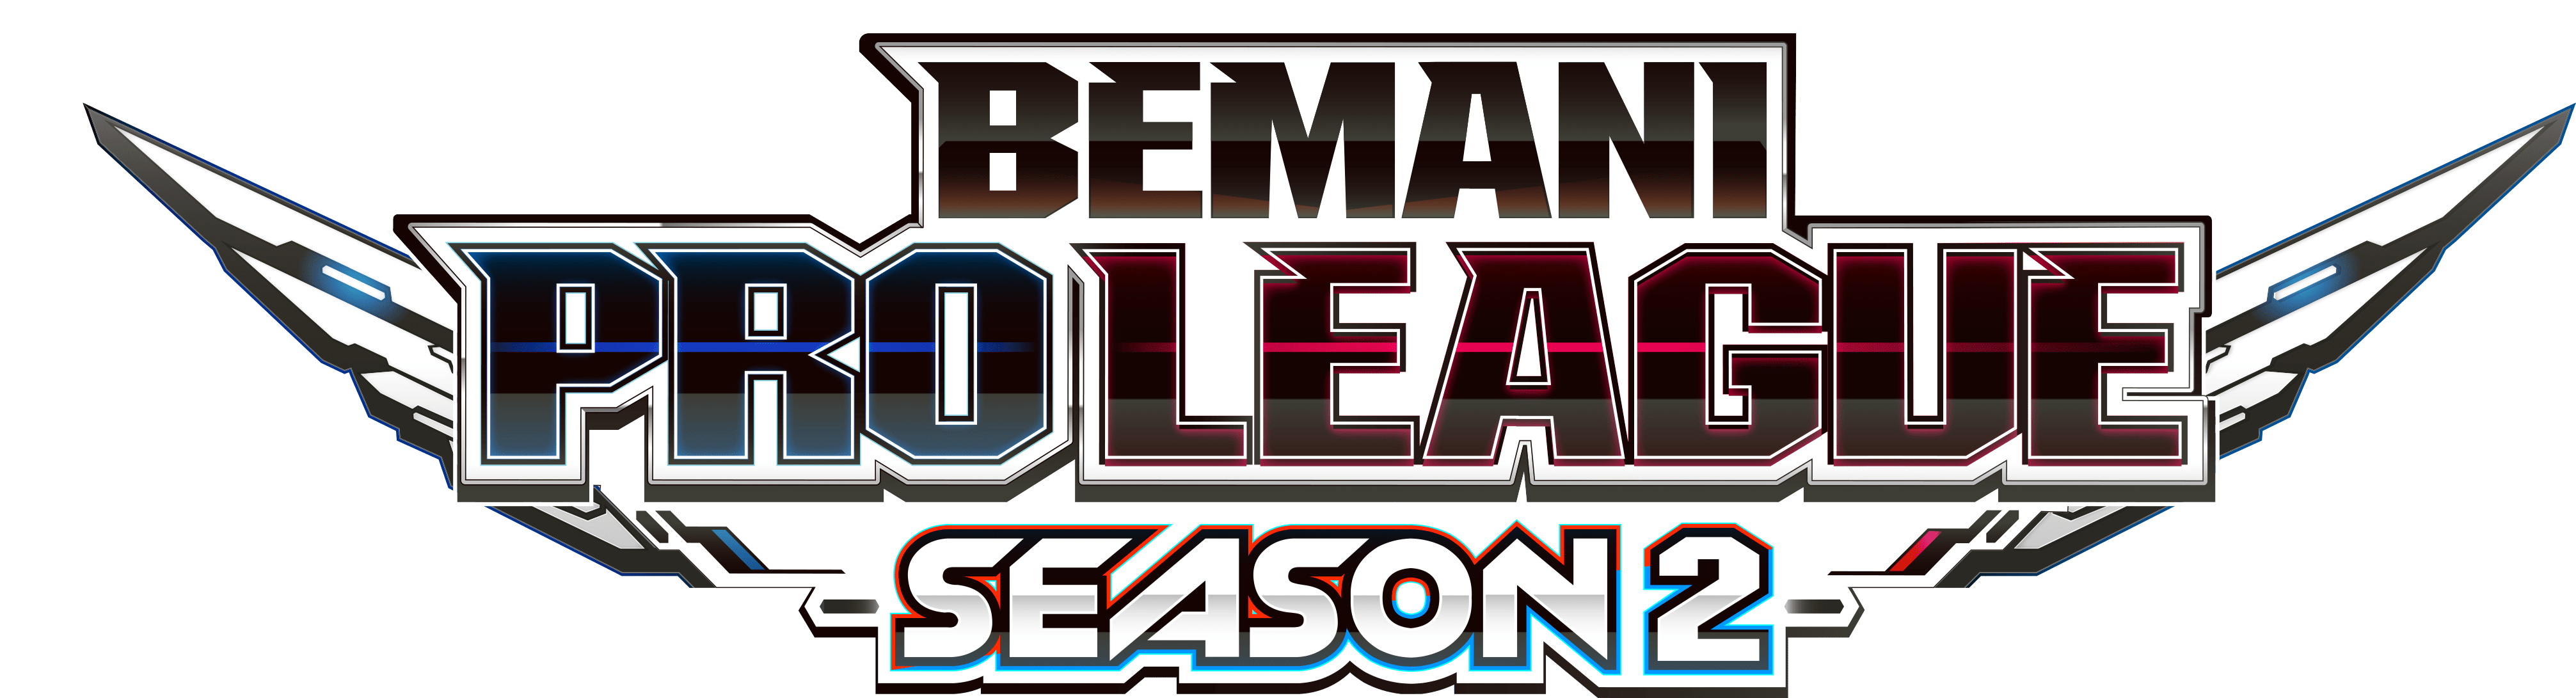 【大会情報】BEMANI PRO LEAGUE SEASON2 レギュラーステージ 第23、24試合【2022年9月14日】